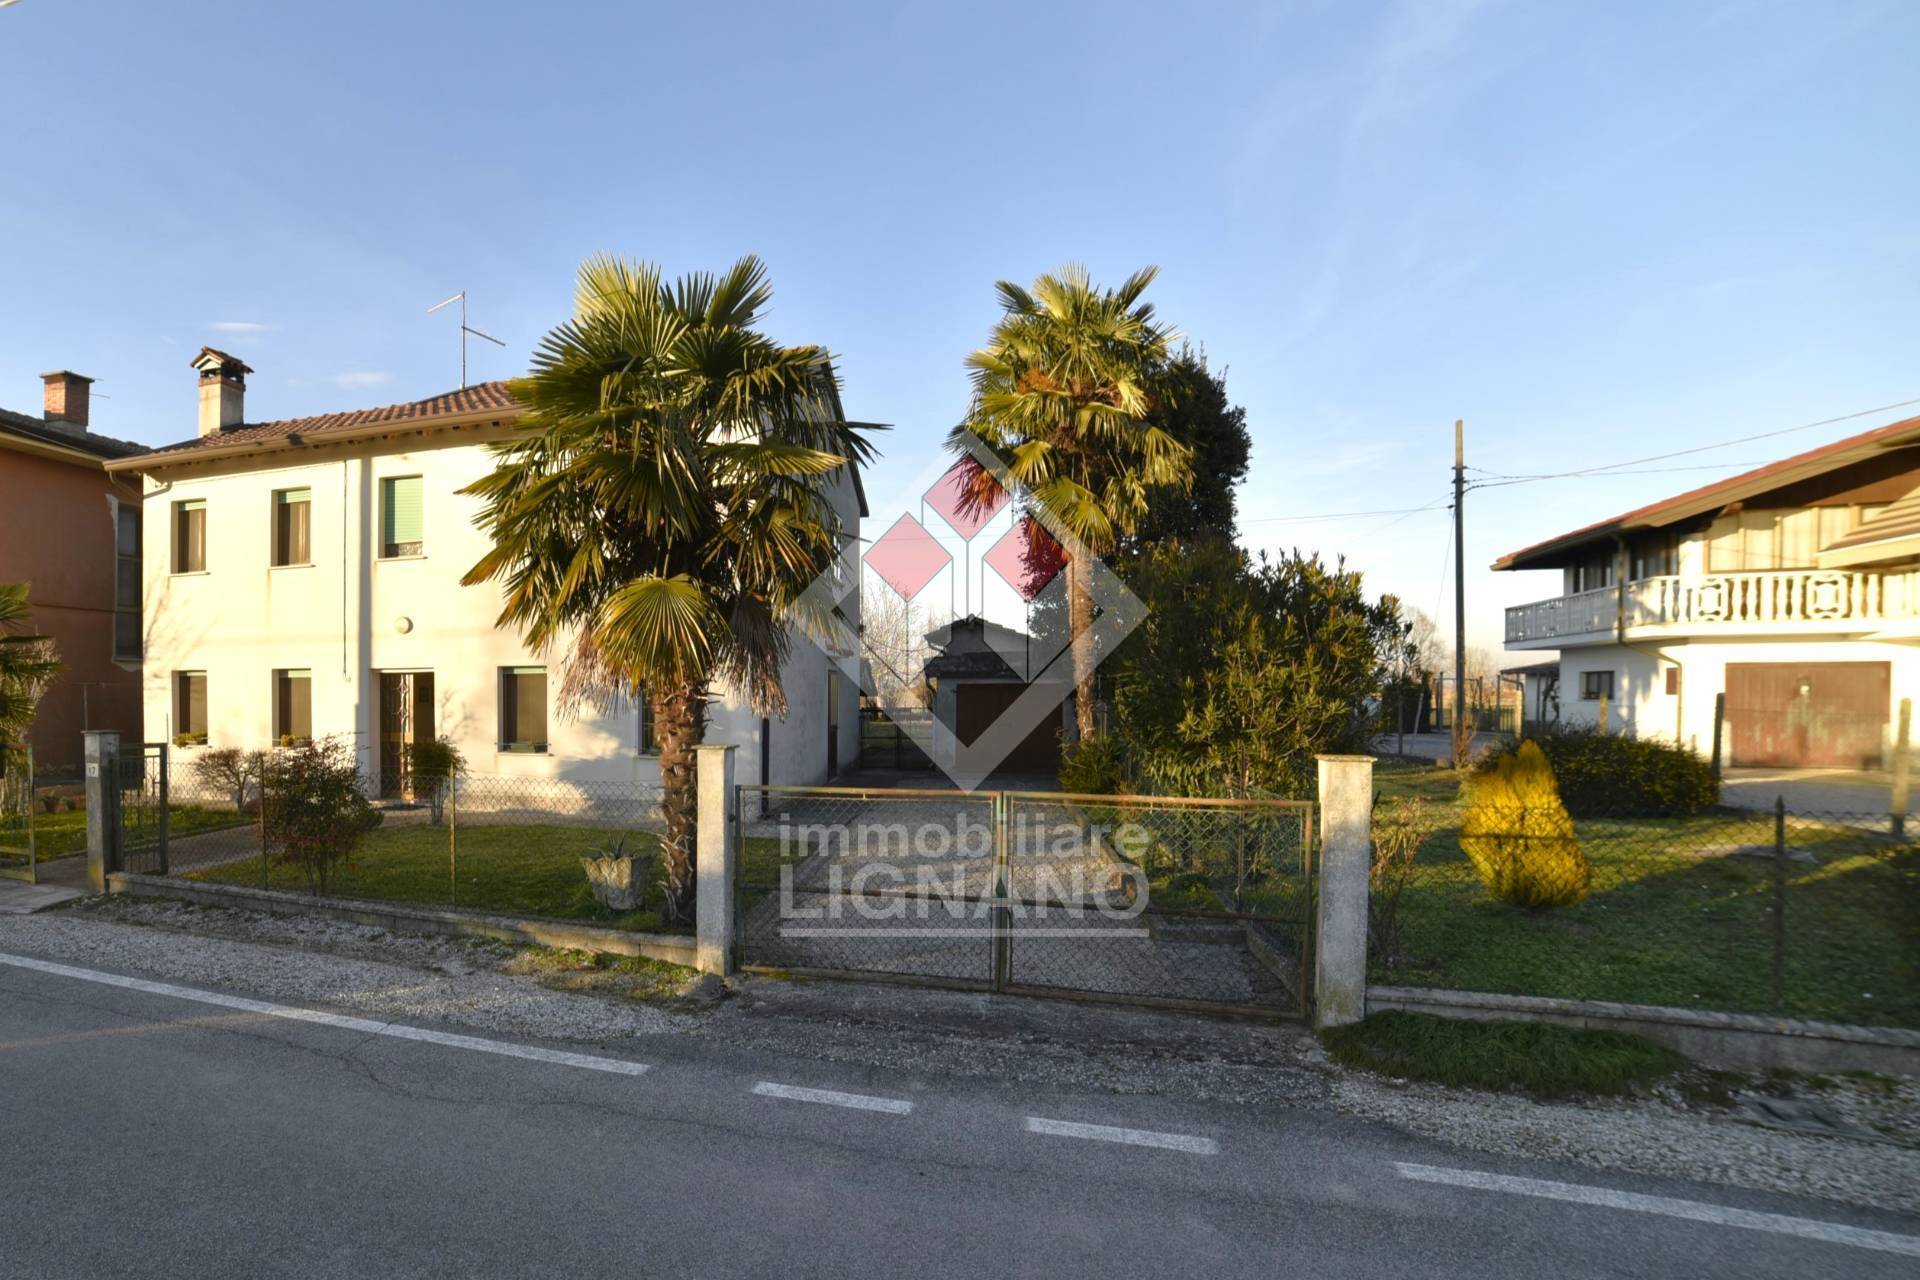 Soluzione Indipendente in vendita a Caorle, 8 locali, zona Località: CastellodiBrussa, prezzo € 118.000 | PortaleAgenzieImmobiliari.it